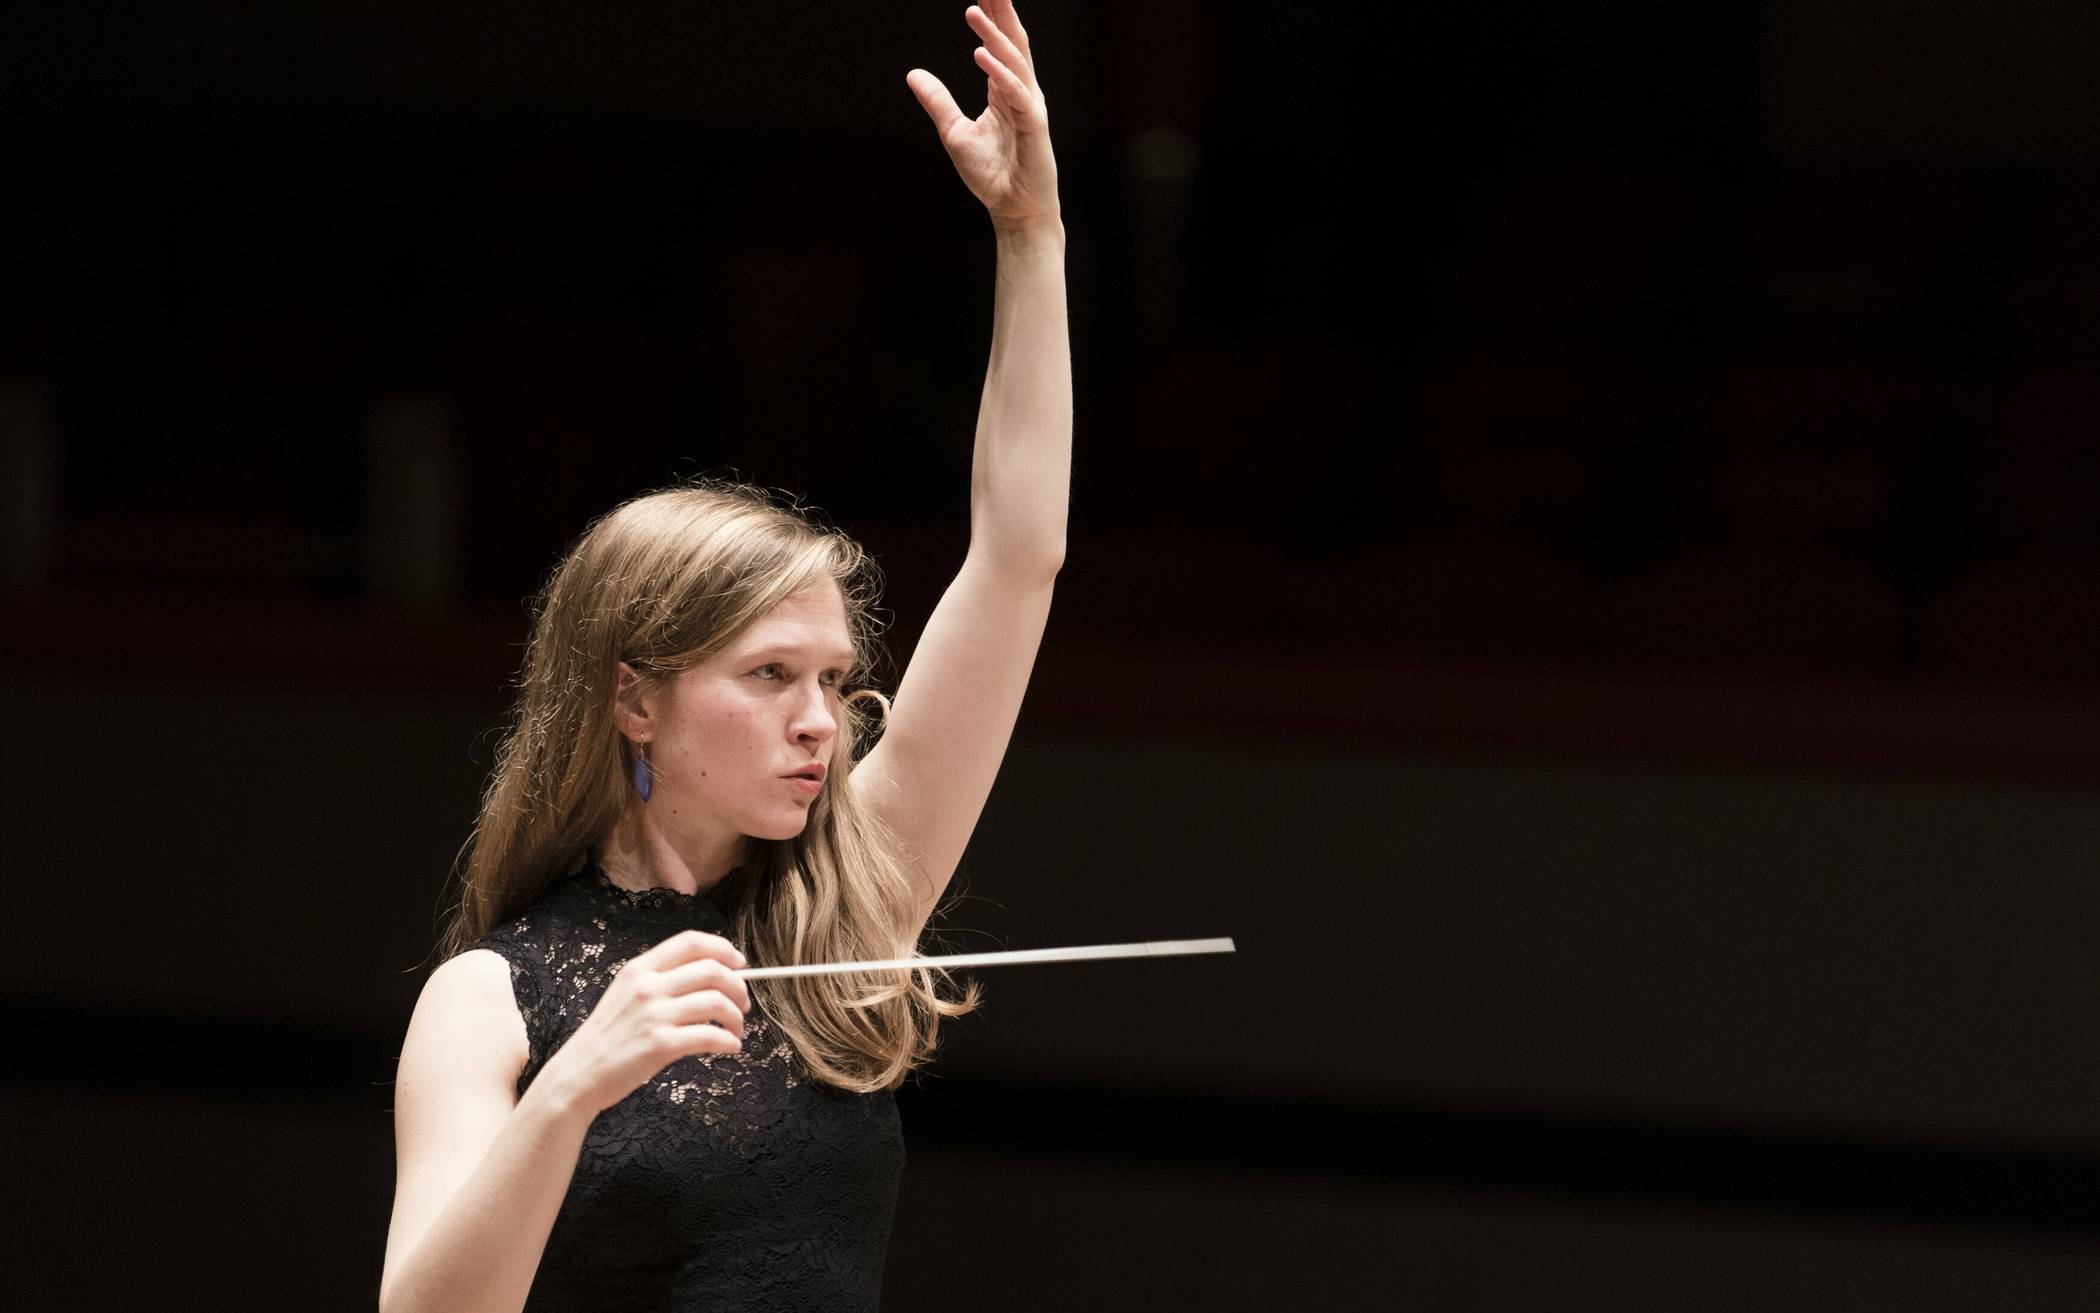  Mirga Granzinyté-Tyla, die Leiterin des City of Birmingham Symphony Orchestra, ist momentan die weltweit gefeiertste Dirigentin.  